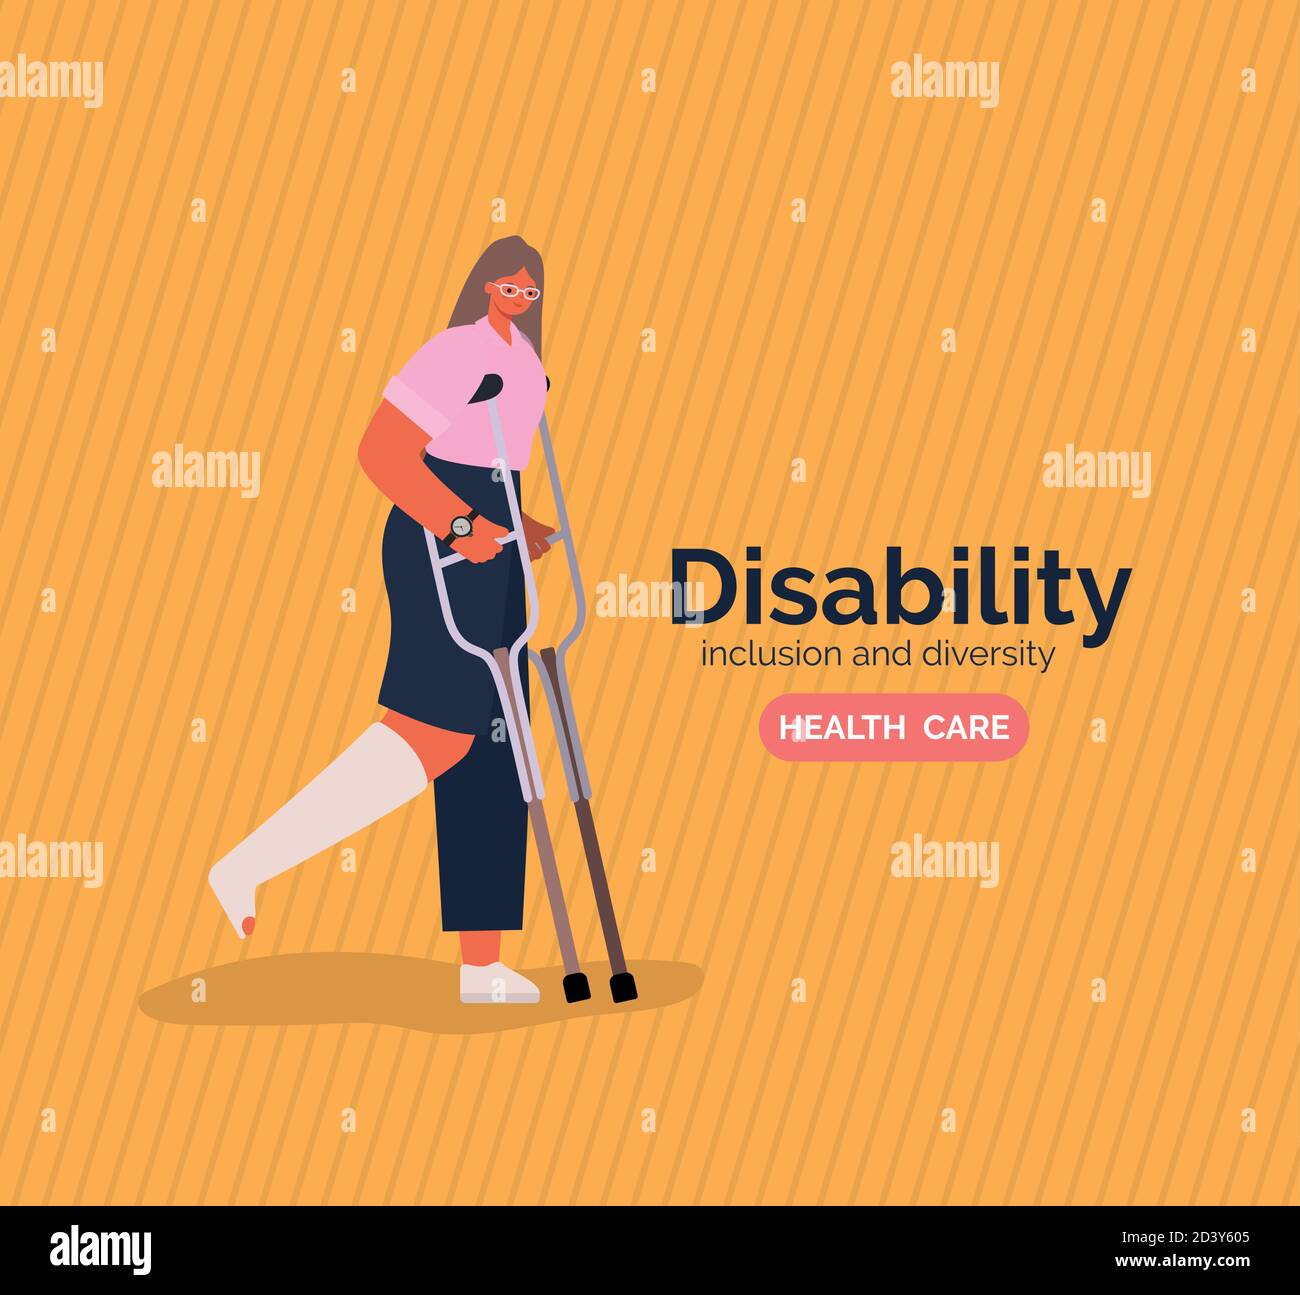 Disability Frau Cartoon mit Bein Cast und Krücken Vektor-Design  Stock-Vektorgrafik - Alamy